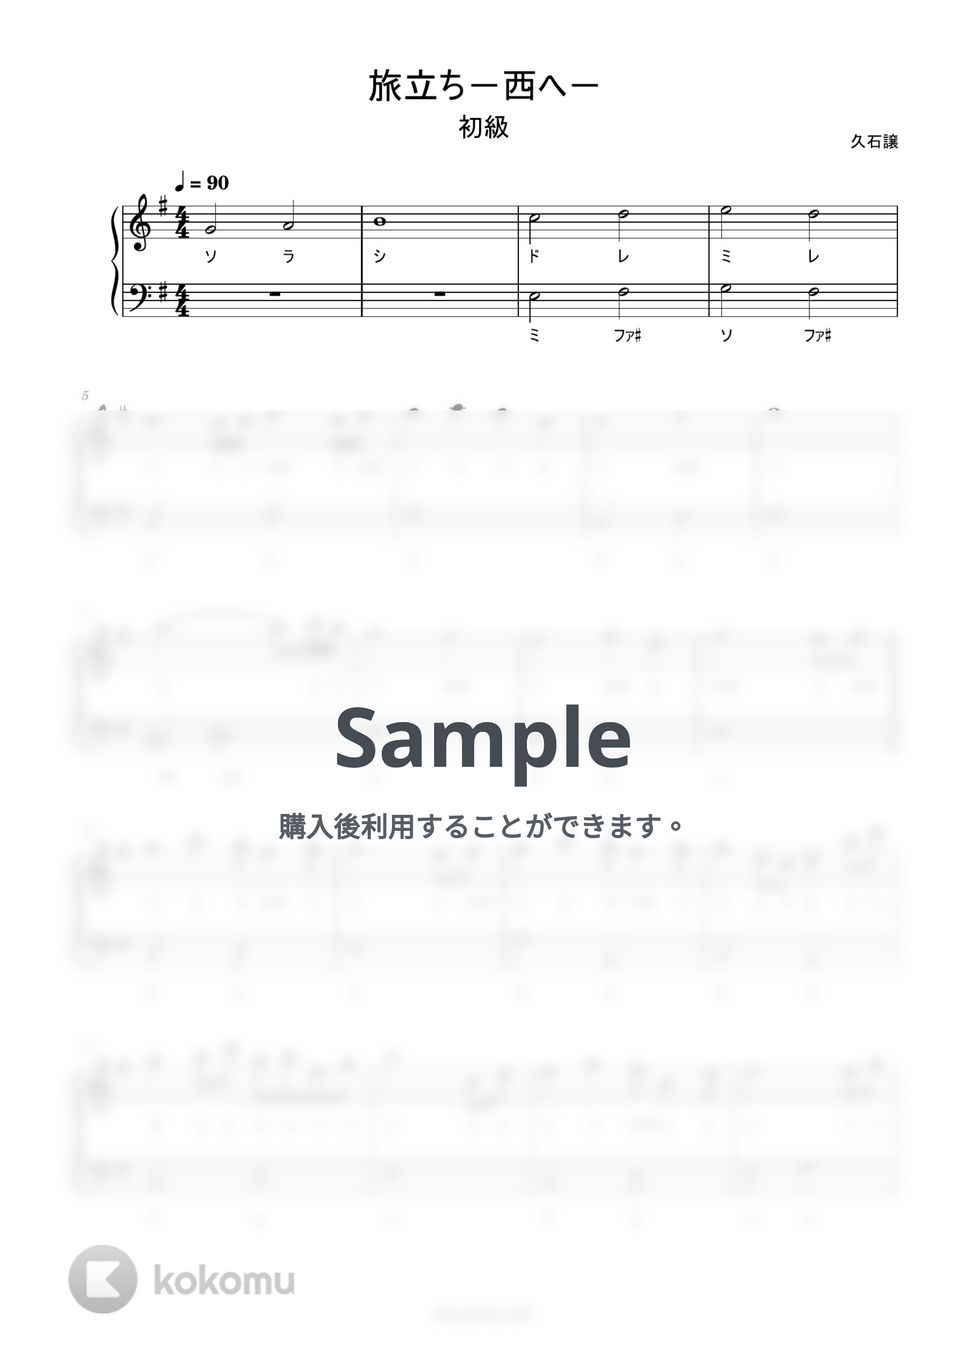 久石譲 - 旅立ち-西へ- (ドレミ付き/簡単楽譜) by ピアノ塾